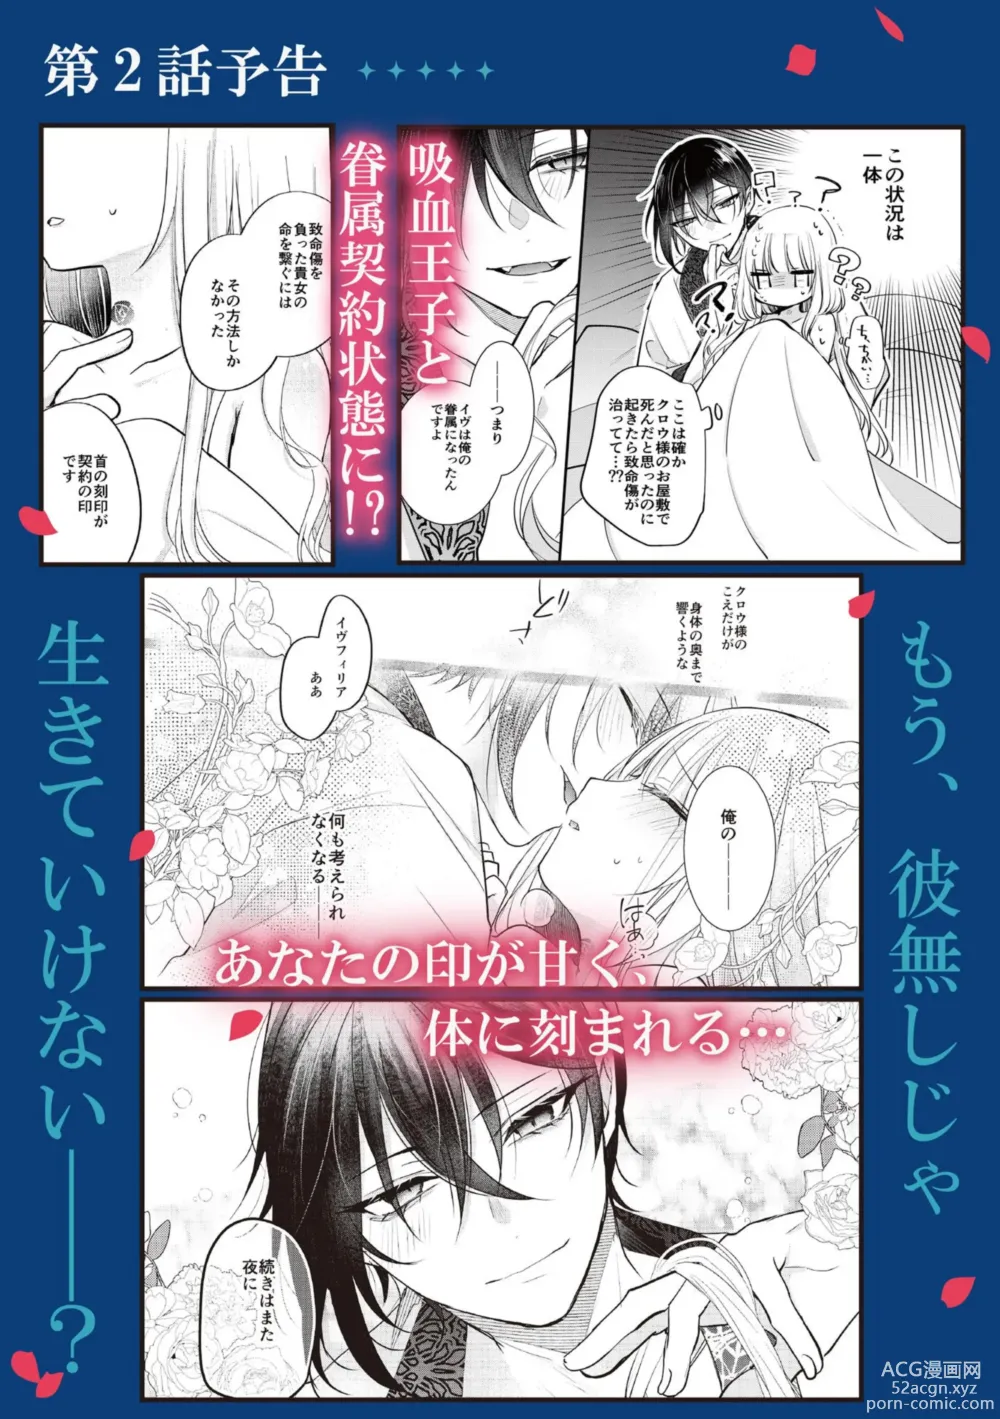 Page 41 of manga Akuyaku Reijou to Kyuuketsu Ouji no Dekiai Keiyaku Bad End ￫ Kenzoku Route no Amai Yotogi 1